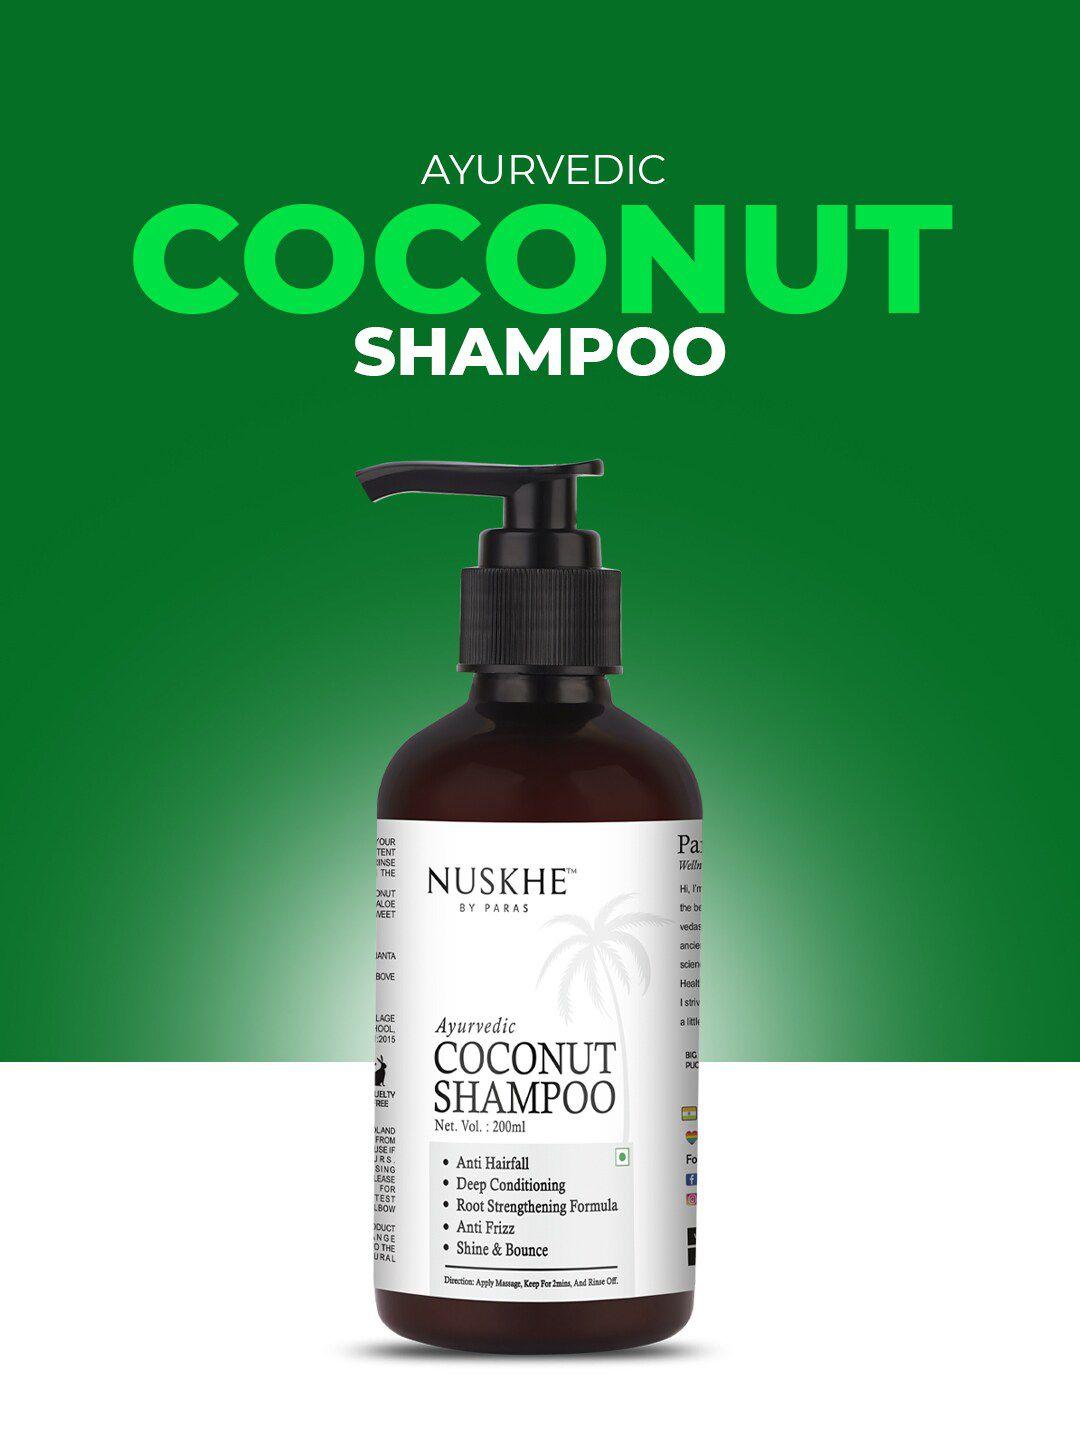 nuskhe by paras ayurvedic coconut shampoo with aloevera & keratin - 200 ml